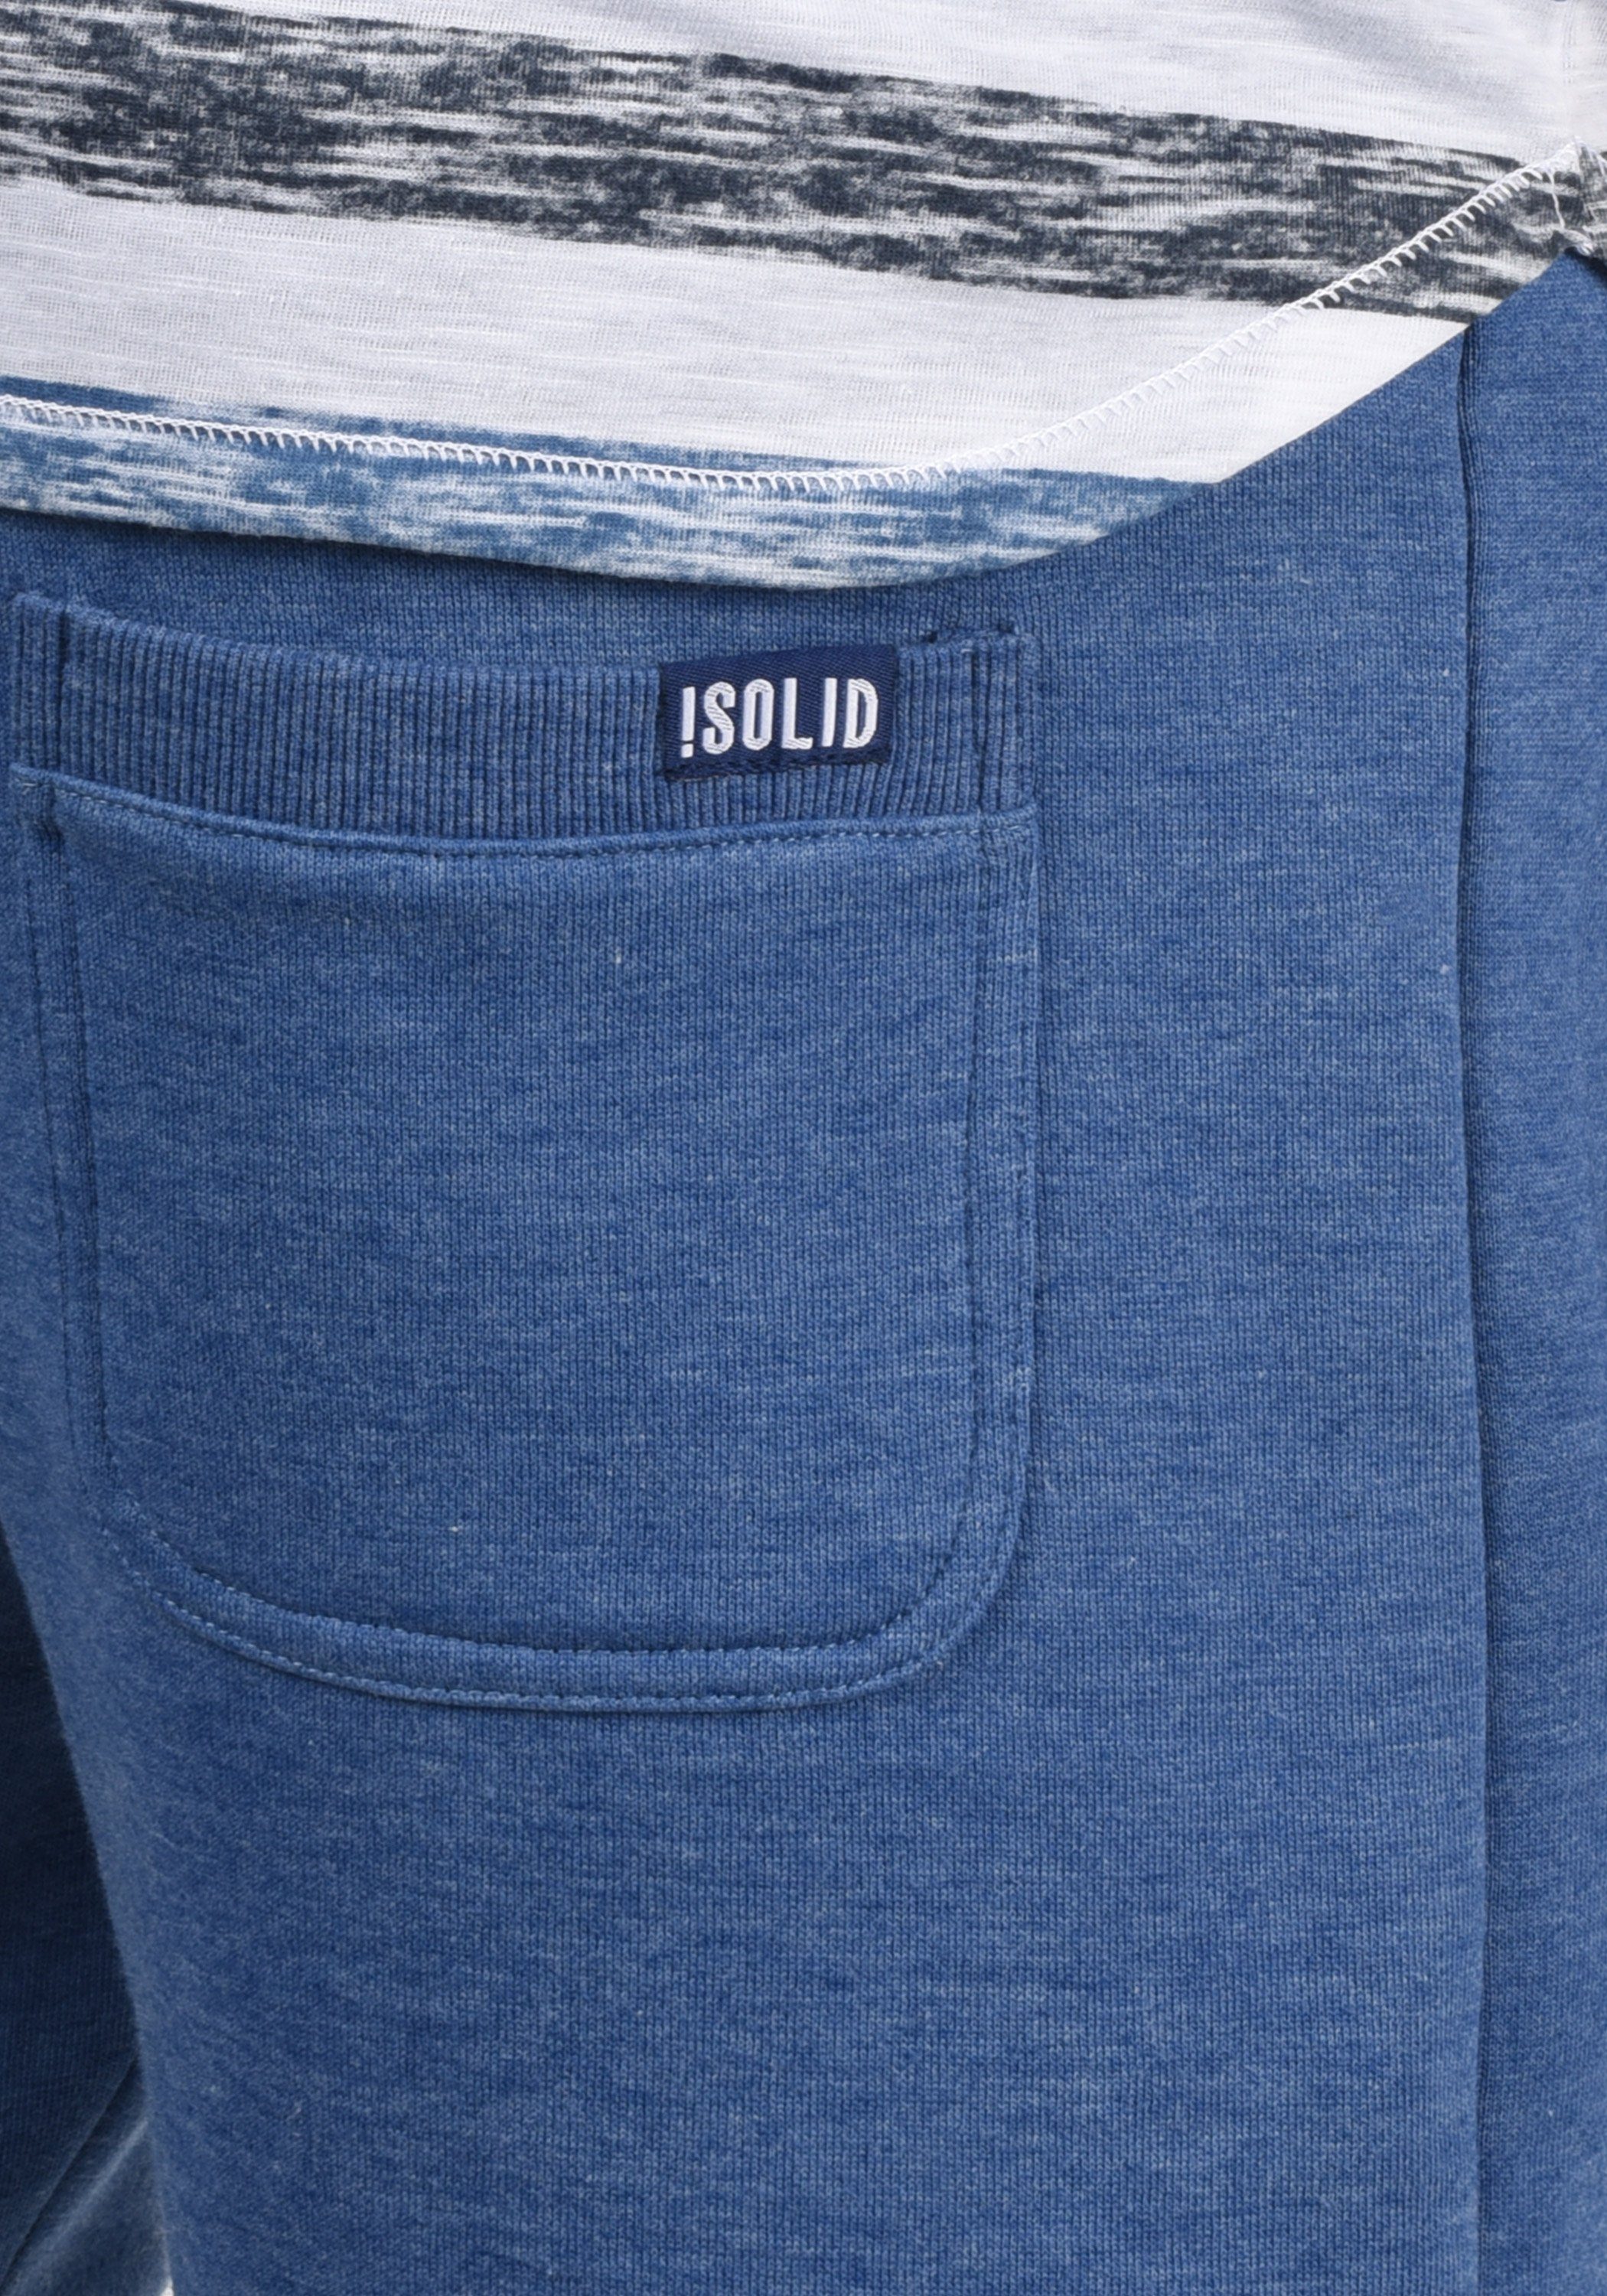 Faded kurze SDBennShorts Blue (1542M) Melange Hose mit Kontrastkordeln !Solid breiten Sweatshorts